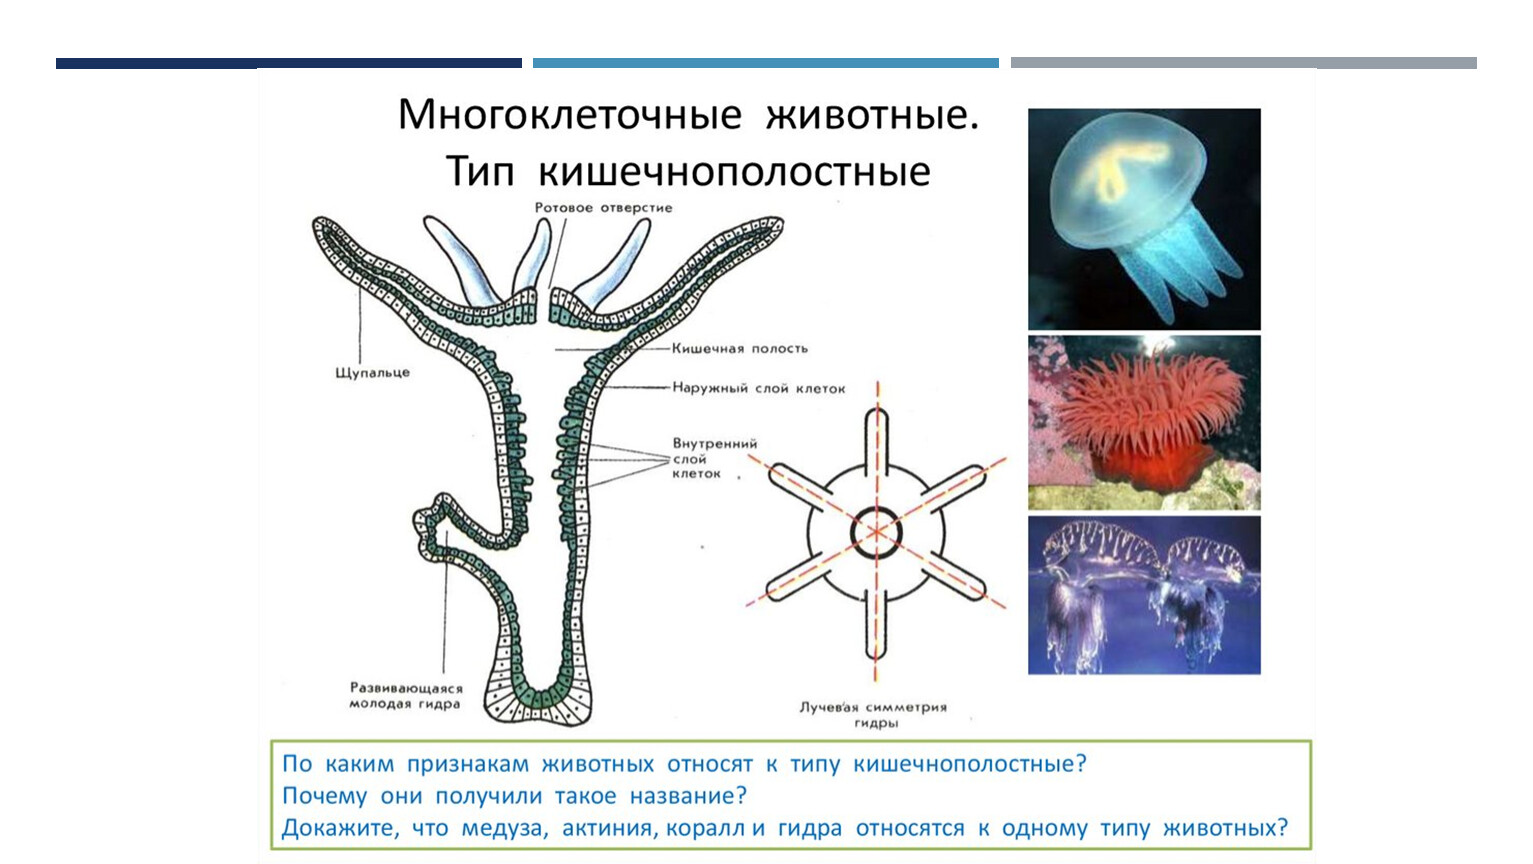 Три признака кишечнополостных. Кишечнополостные гидра медузы кораллы. Тип Кишечнополостные строение медузы. Гидроидные Сцифоидные коралловые полипы. Представители кишечнополостных 5 класс биология.